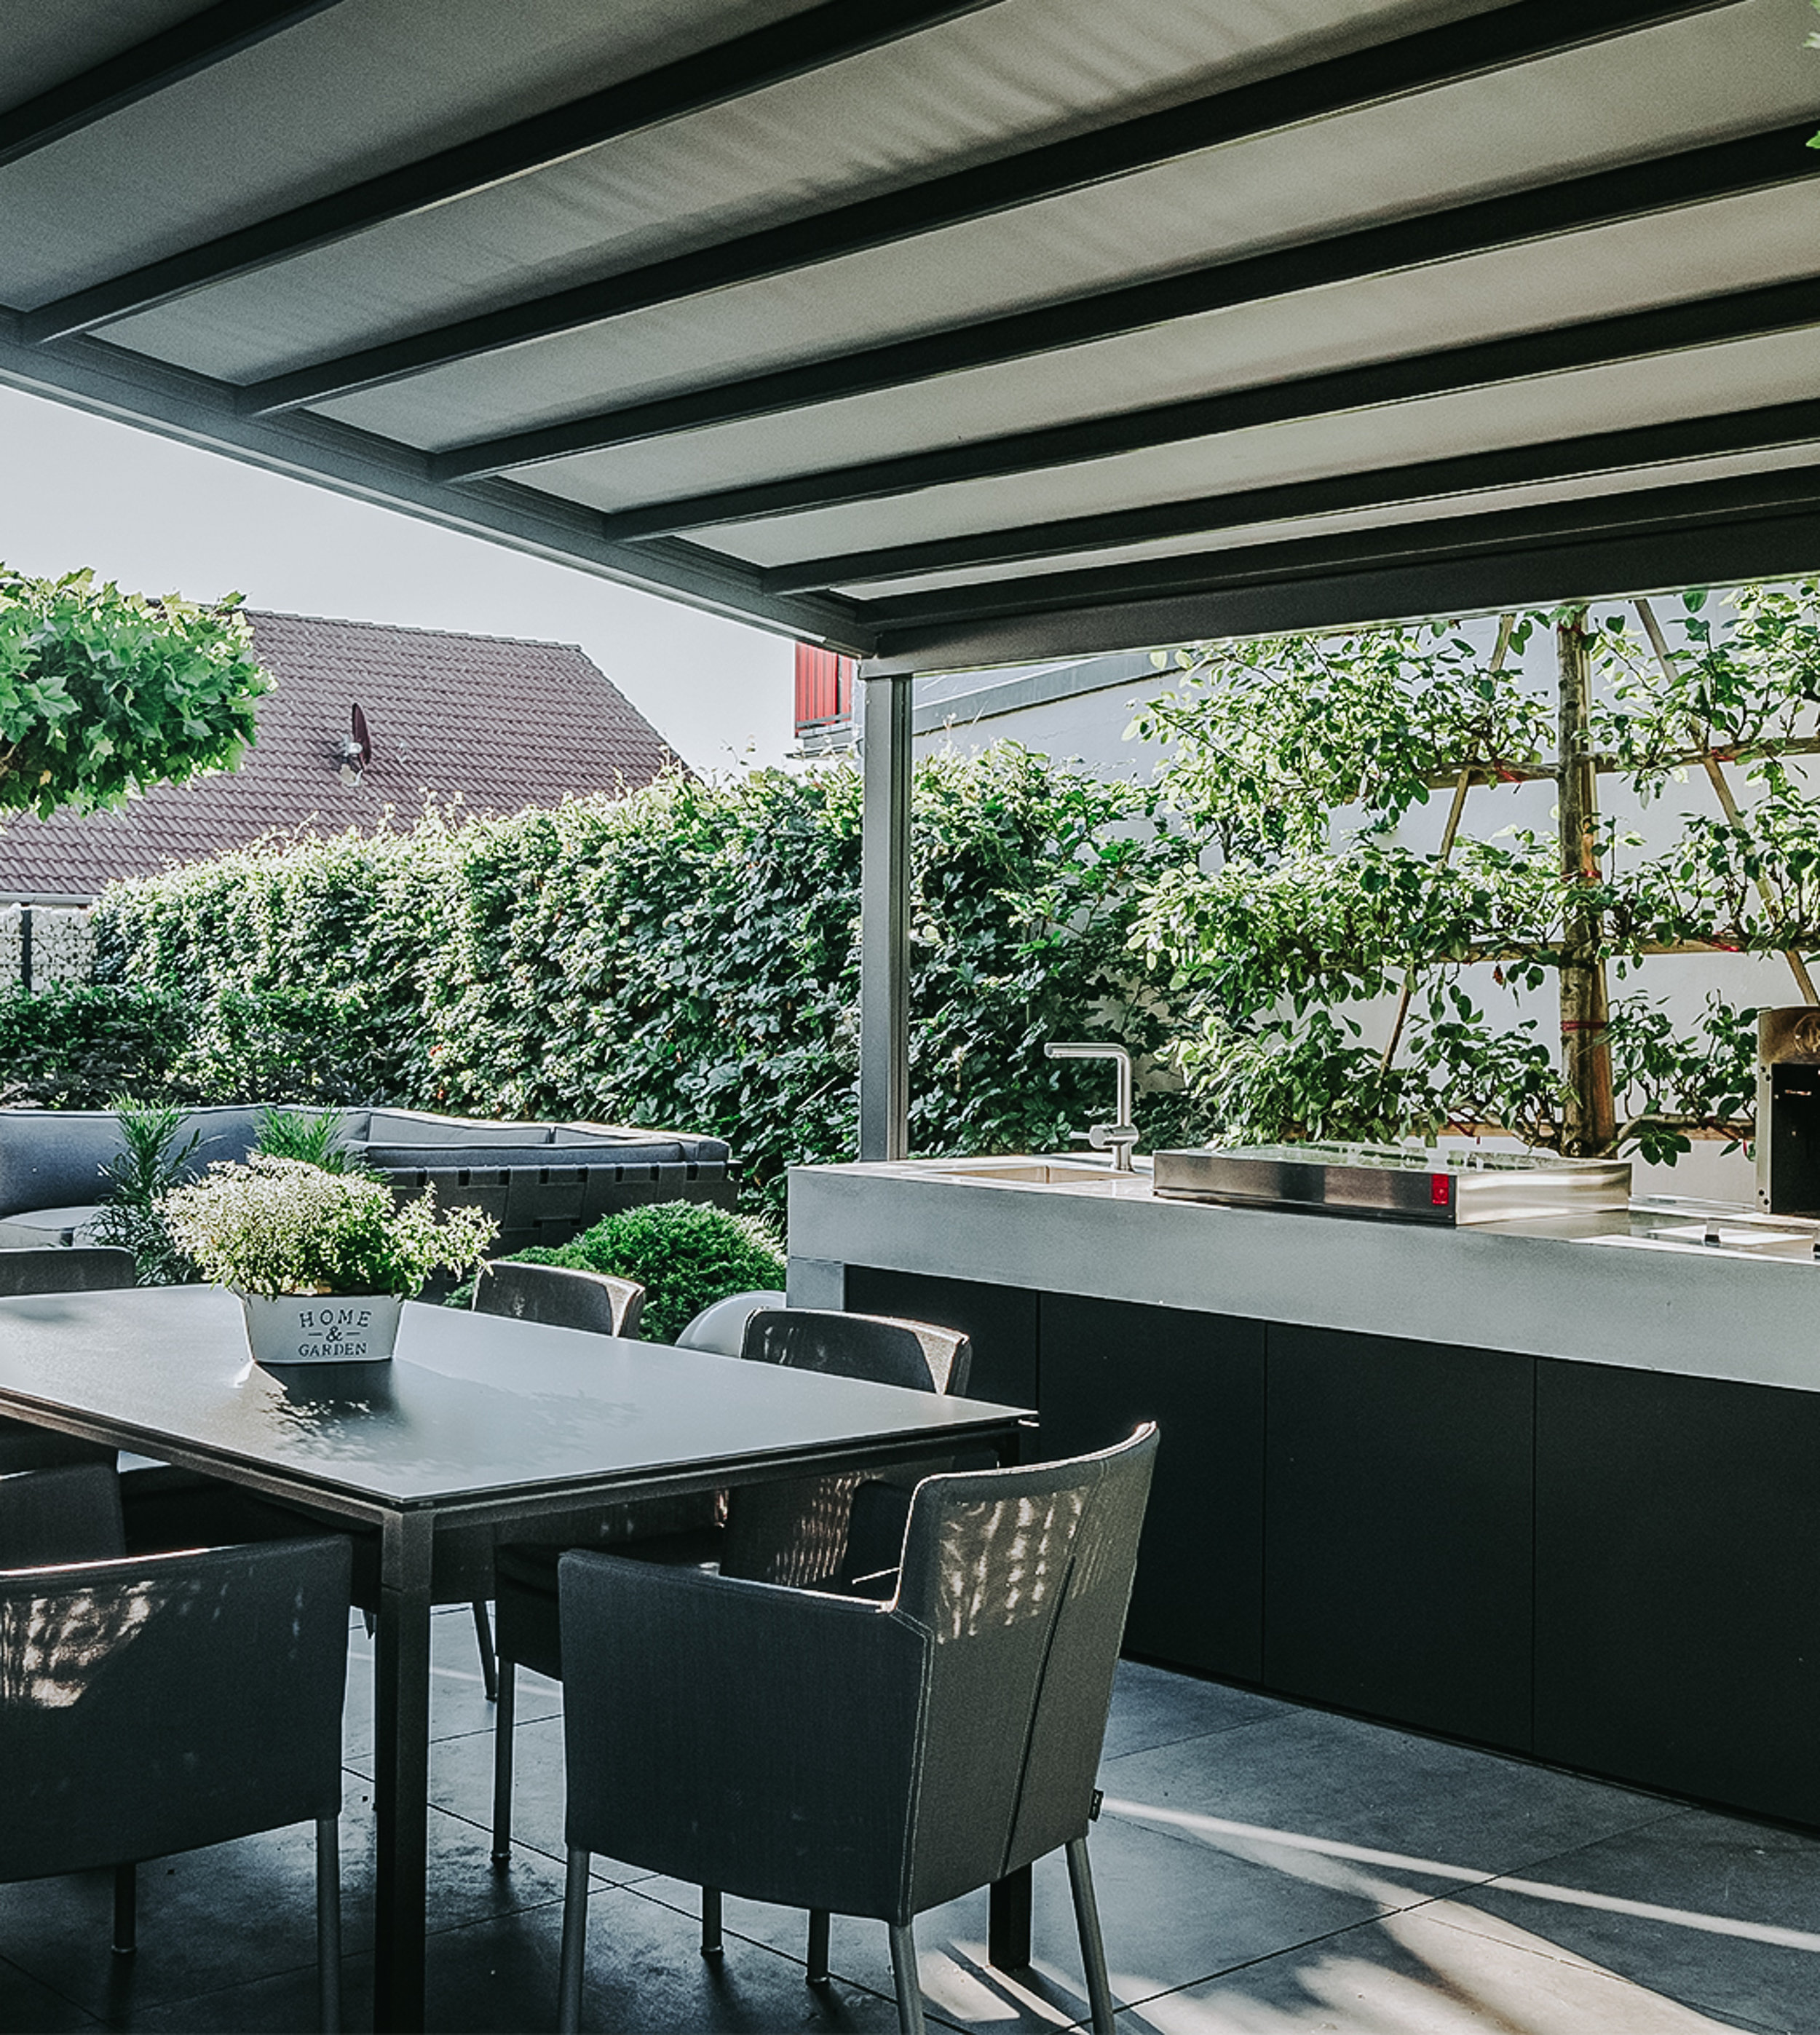 Eine überdachte Terrasse mit schwarzen Fliesen, einer Sitzgruppe und einer Gartenküche. Dahinter ist ein Outdoorsofa zu sehen sowie ein Sichtschutz aus Pflanzen.